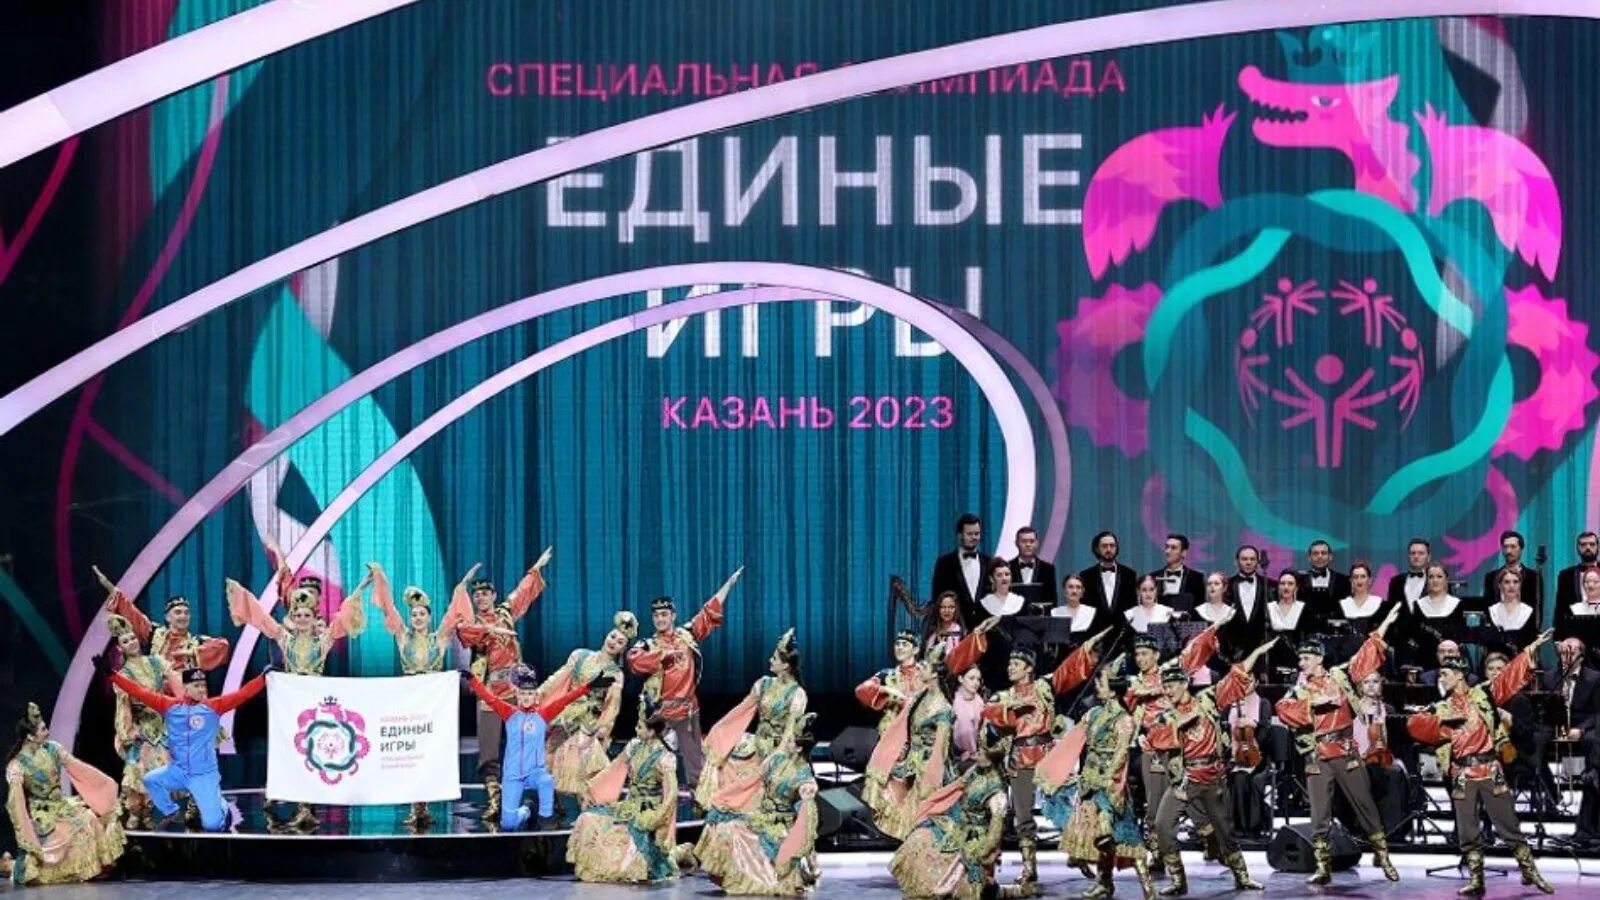 Спецолимпиада Казань 2023. Единые игры специальной олимпиады 2023 года Казань.